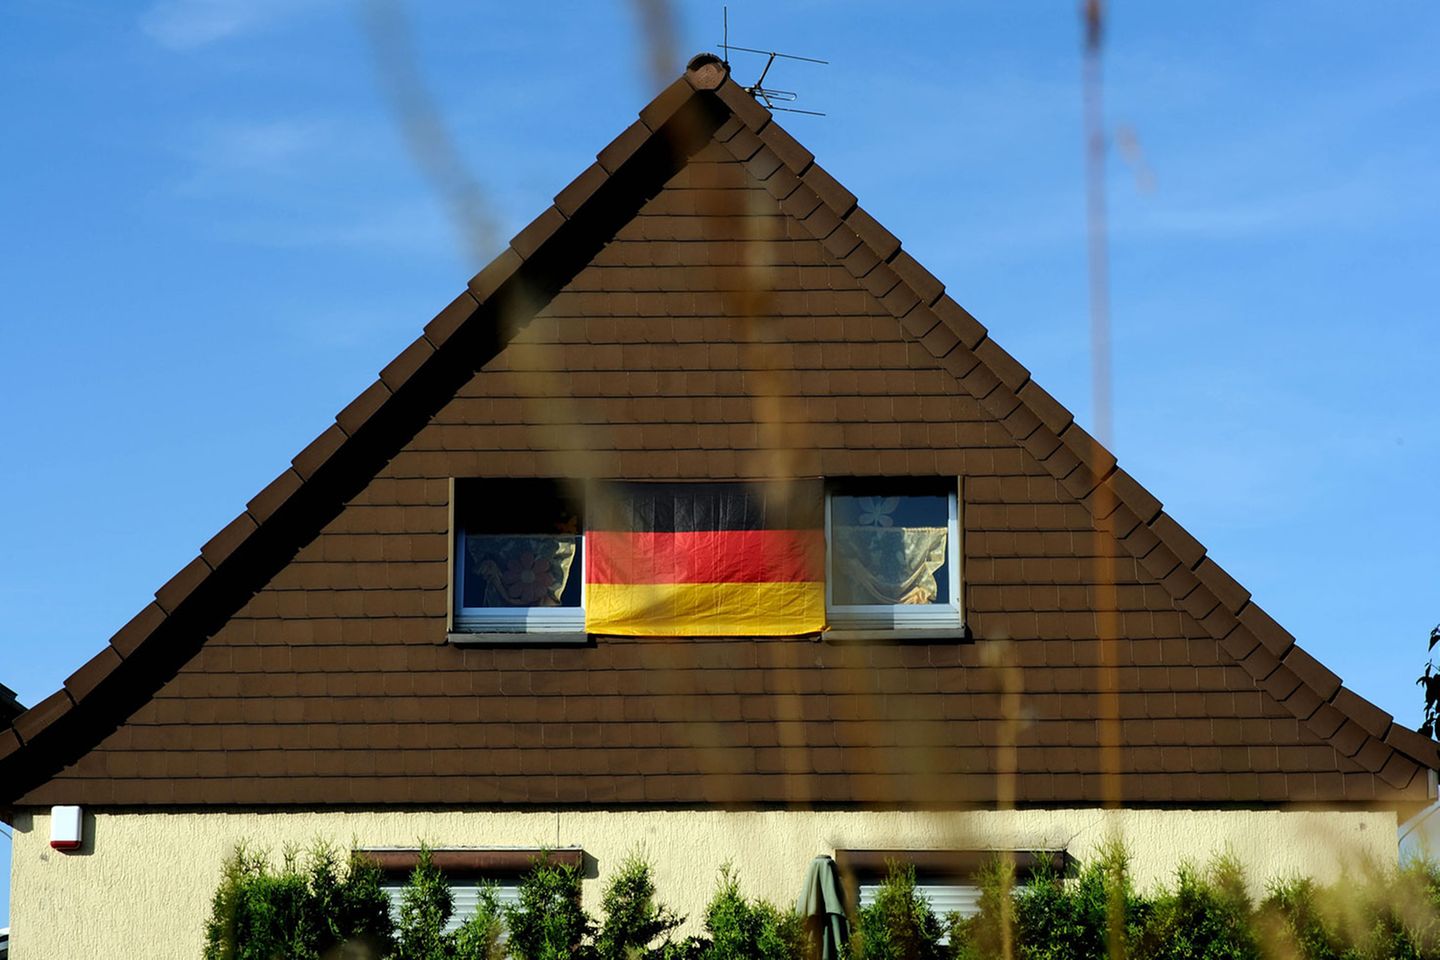 Alle zwei Jahre - pünktlich zur Fußball-EM oder -WM - werden viele Deutsche von einem patriotischen Gefühlsüberschwang gepackt. Dann müssen sie plötzlich ihre Häuser, Balkone, Autos oder Außenspiegel mit schwarz-rot-goldenen Emblemen behängen, um ihre Verbundenheit mit der Nationalmannschaft zum Ausdruck zu bringen und in einem großen Kollektiv aufzugehen.